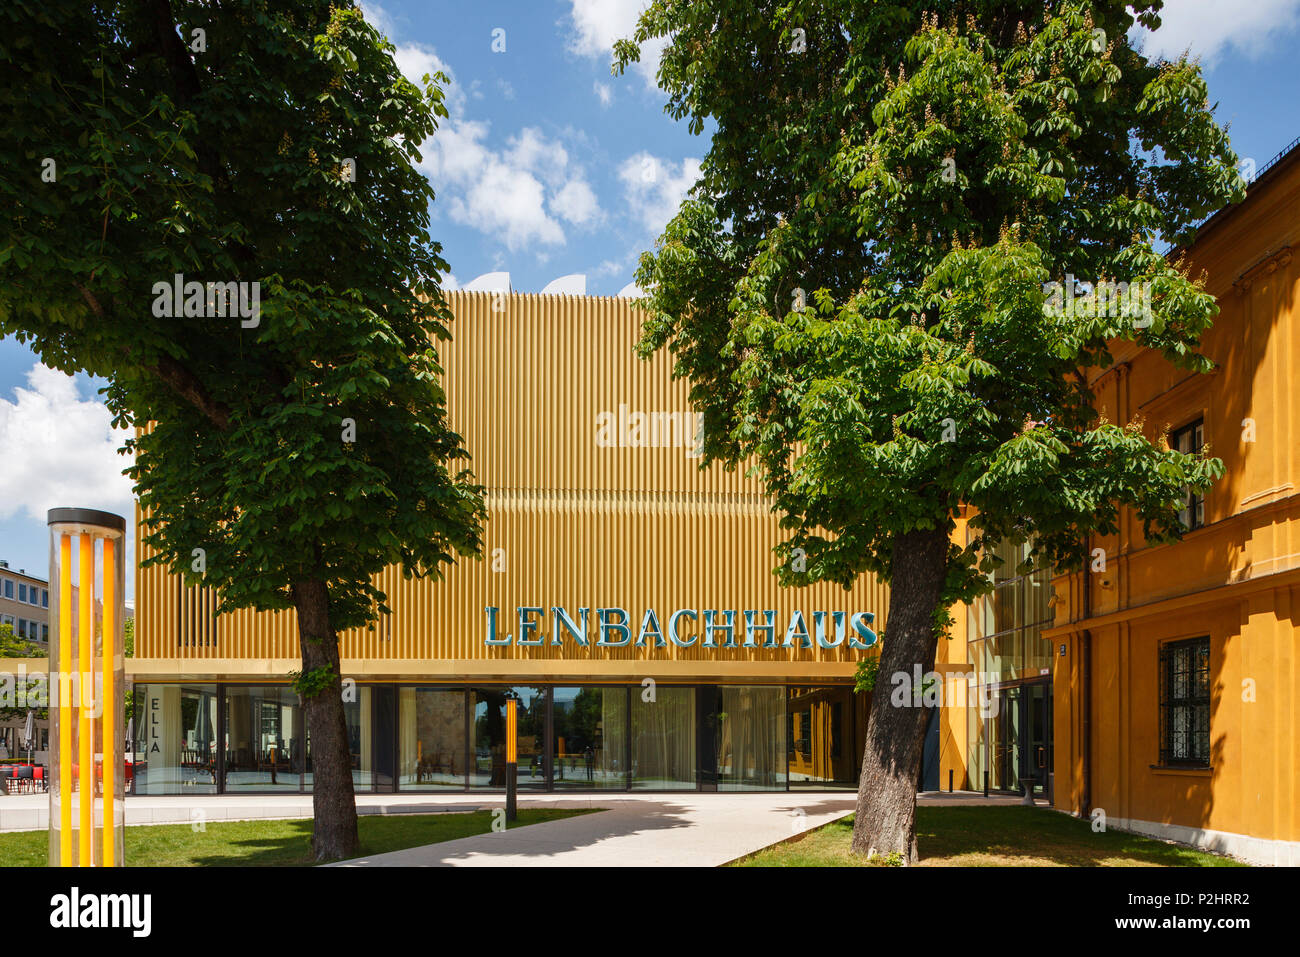 Lehnbachhaus, Museo d'arte, estensione dell'edificio esistente dall'architetto Norman Foster e Partner, Staedtische Galerie im Leh Foto Stock